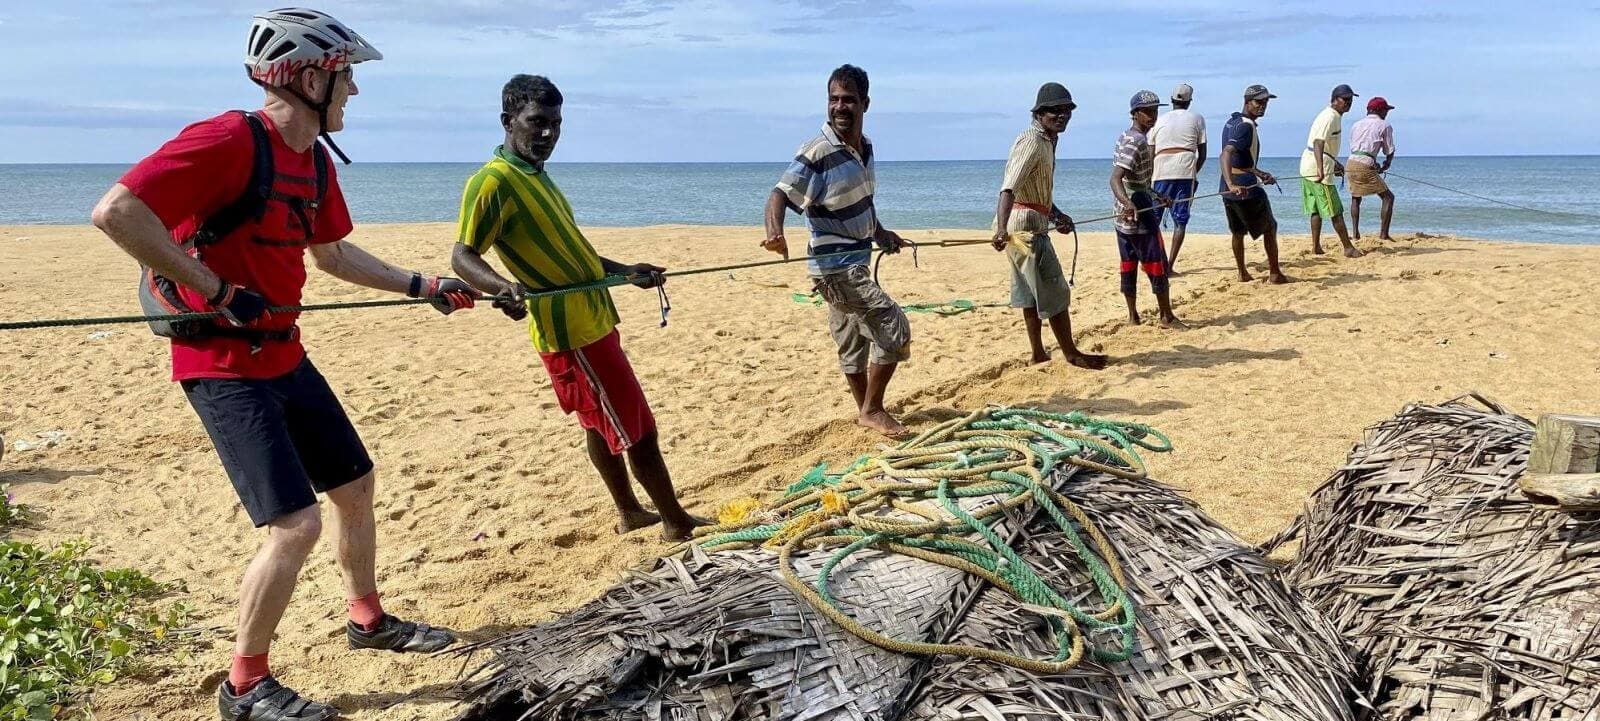 Ein Bild vom Netzfischen am Strand von Trincomalee in Sri Lanka